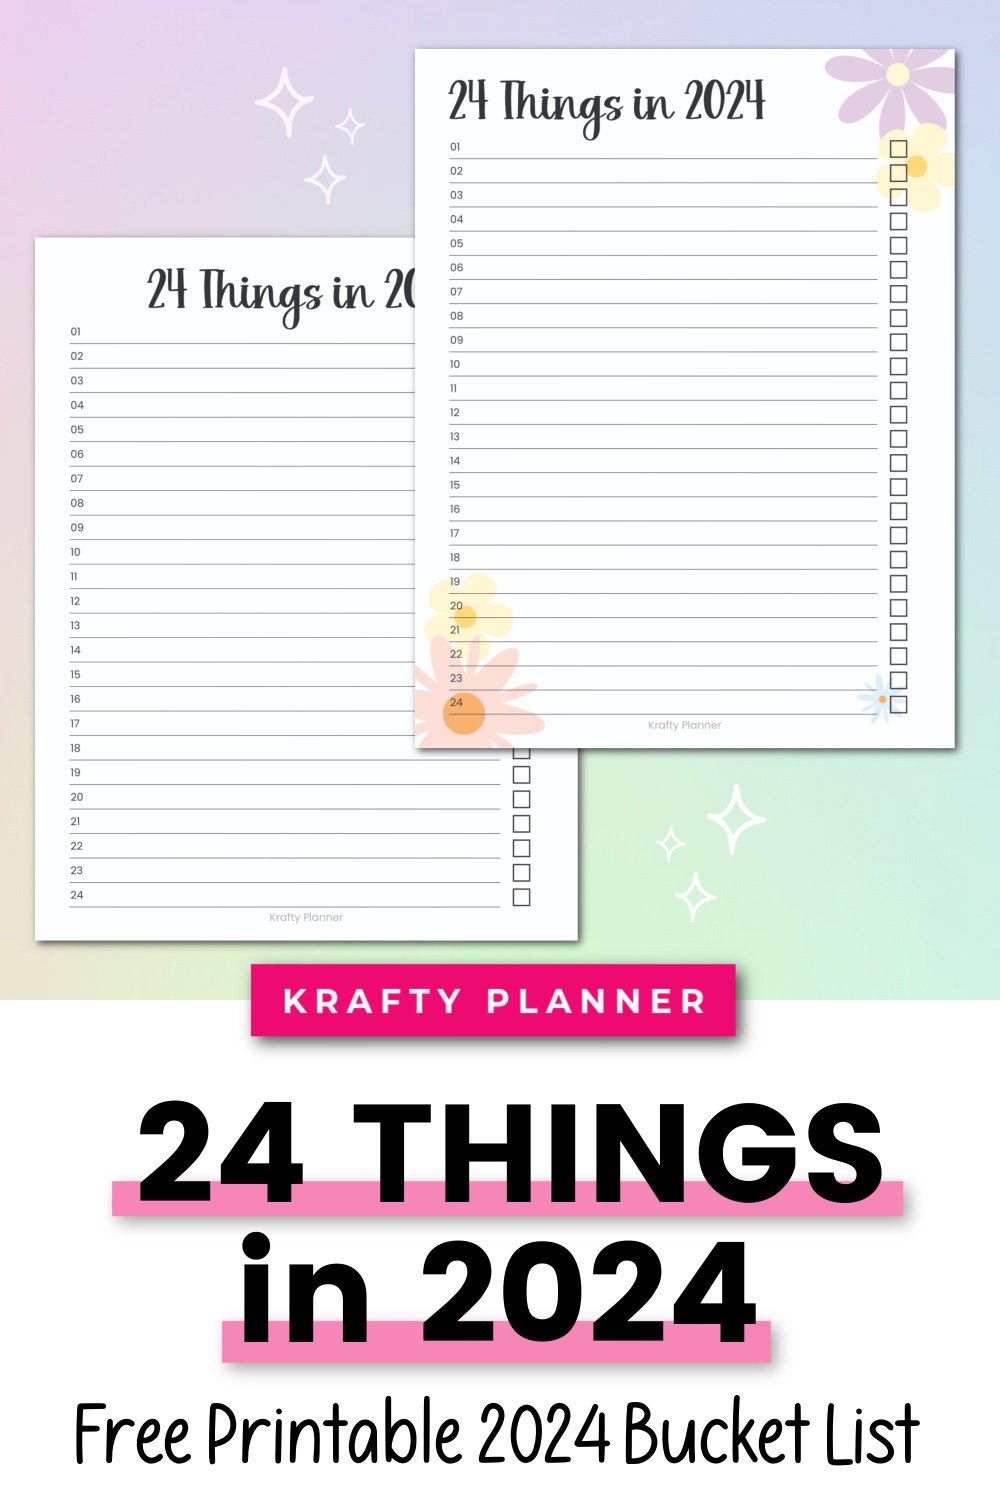 24 Things in 2024 - Free Printable 2024 Bucket List